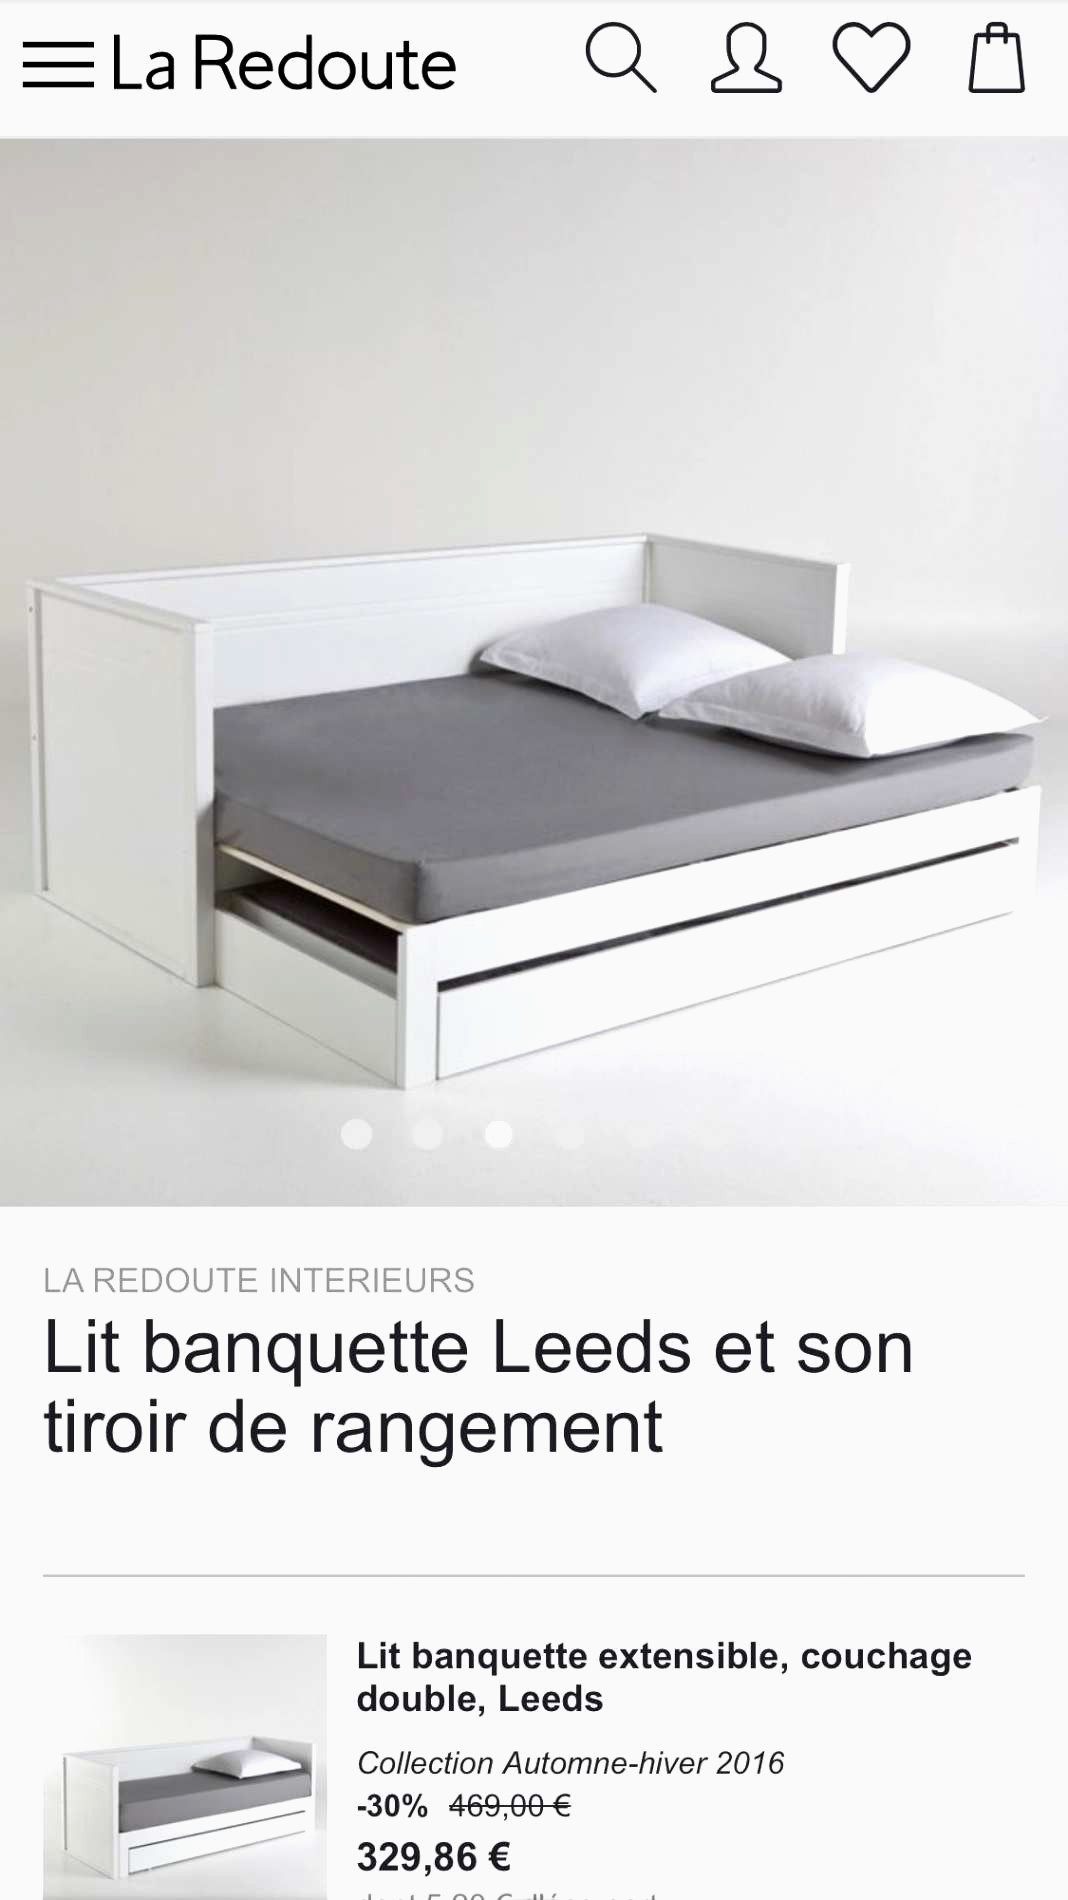 Tete De Lit Redoute Luxe Tete De Lit Rangement 160 Ikea Tete De Lit 160 Meilleur De Image